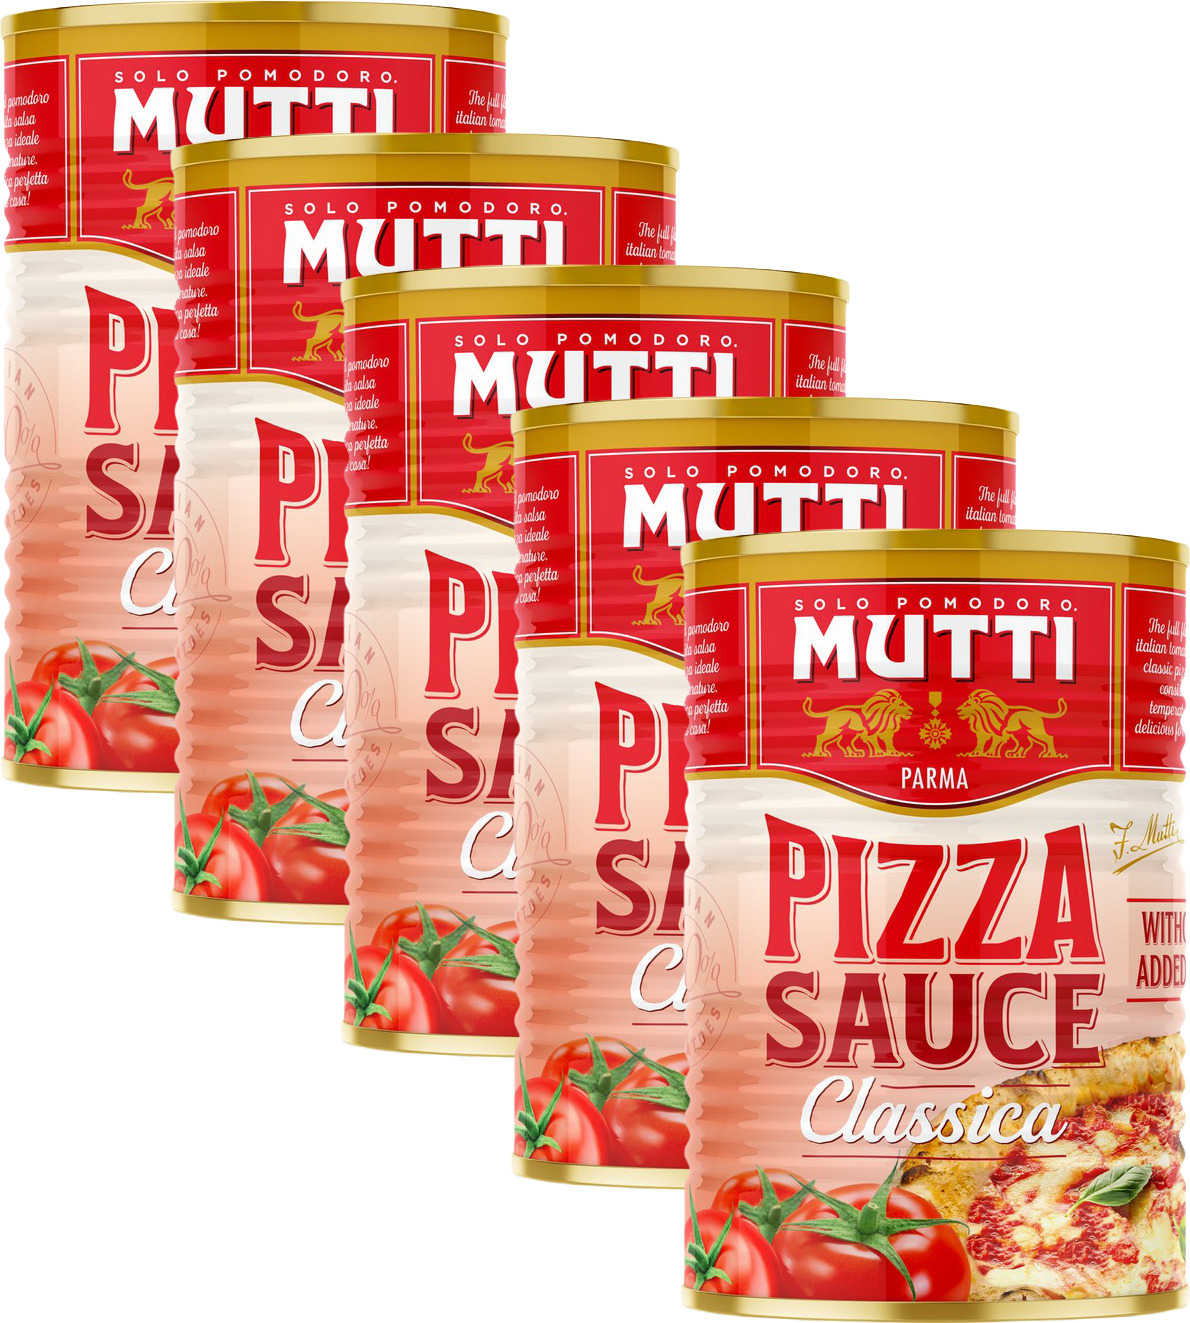 mutti томатный соус для пиццы классический фото 23